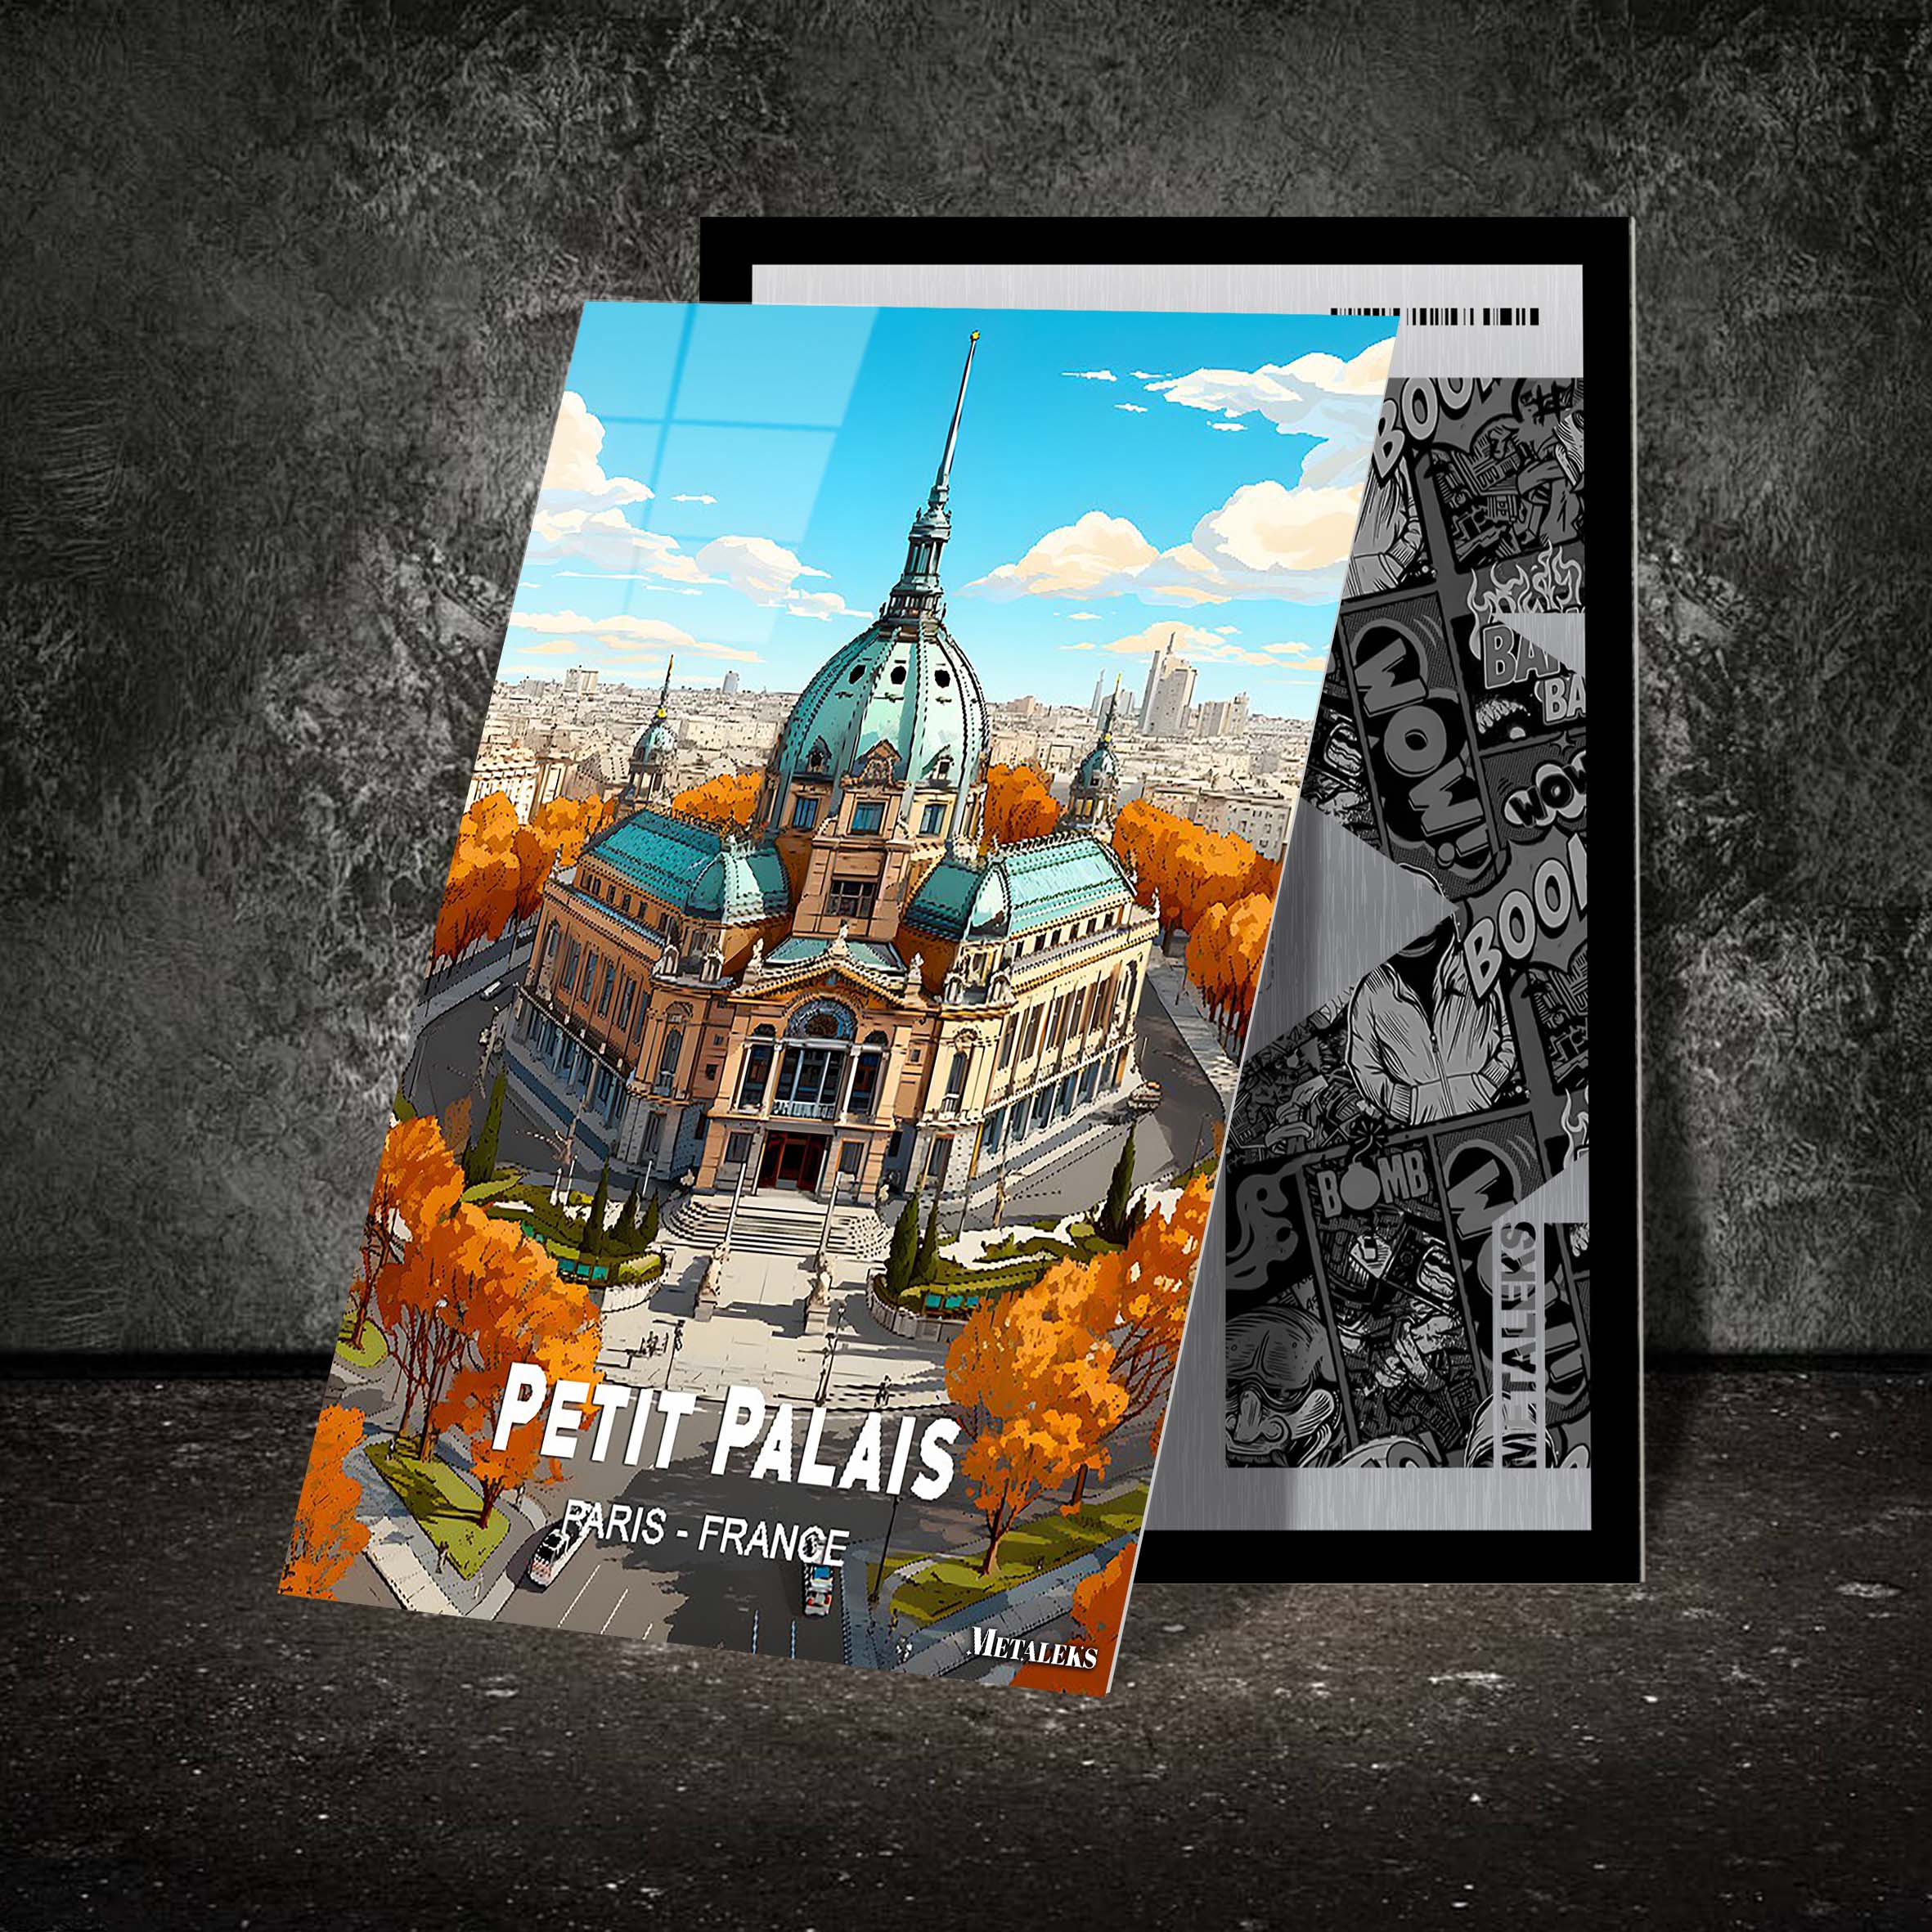 France - Paris - Petit Palais-designed by @Travel Poster AI